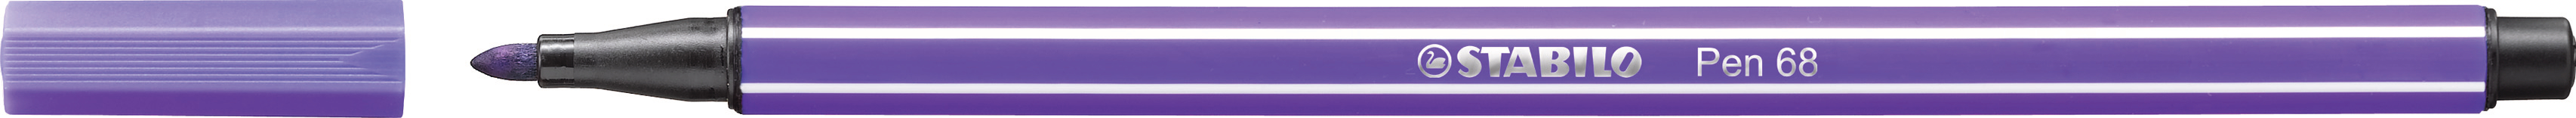 STABILO Stylo Fibre Pen 68 1mm 68/55 violet violet